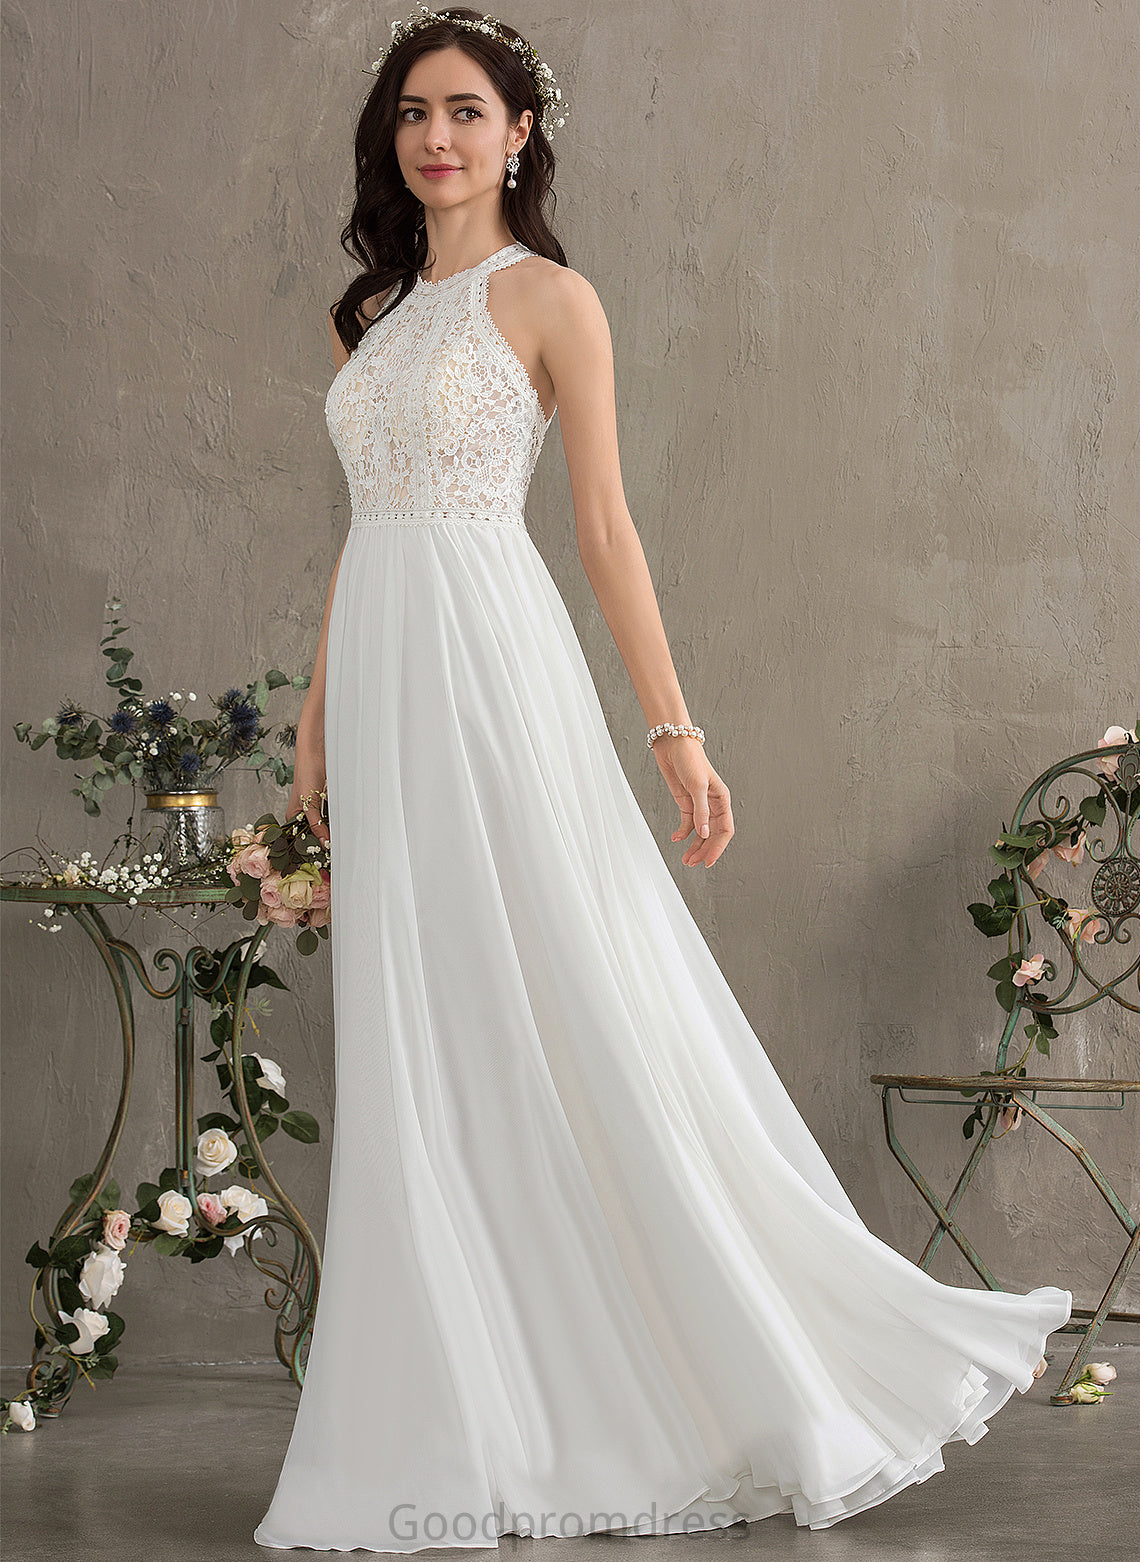 Lace Chiffon Dress A-Line Taryn Floor-Length Wedding Wedding Dresses